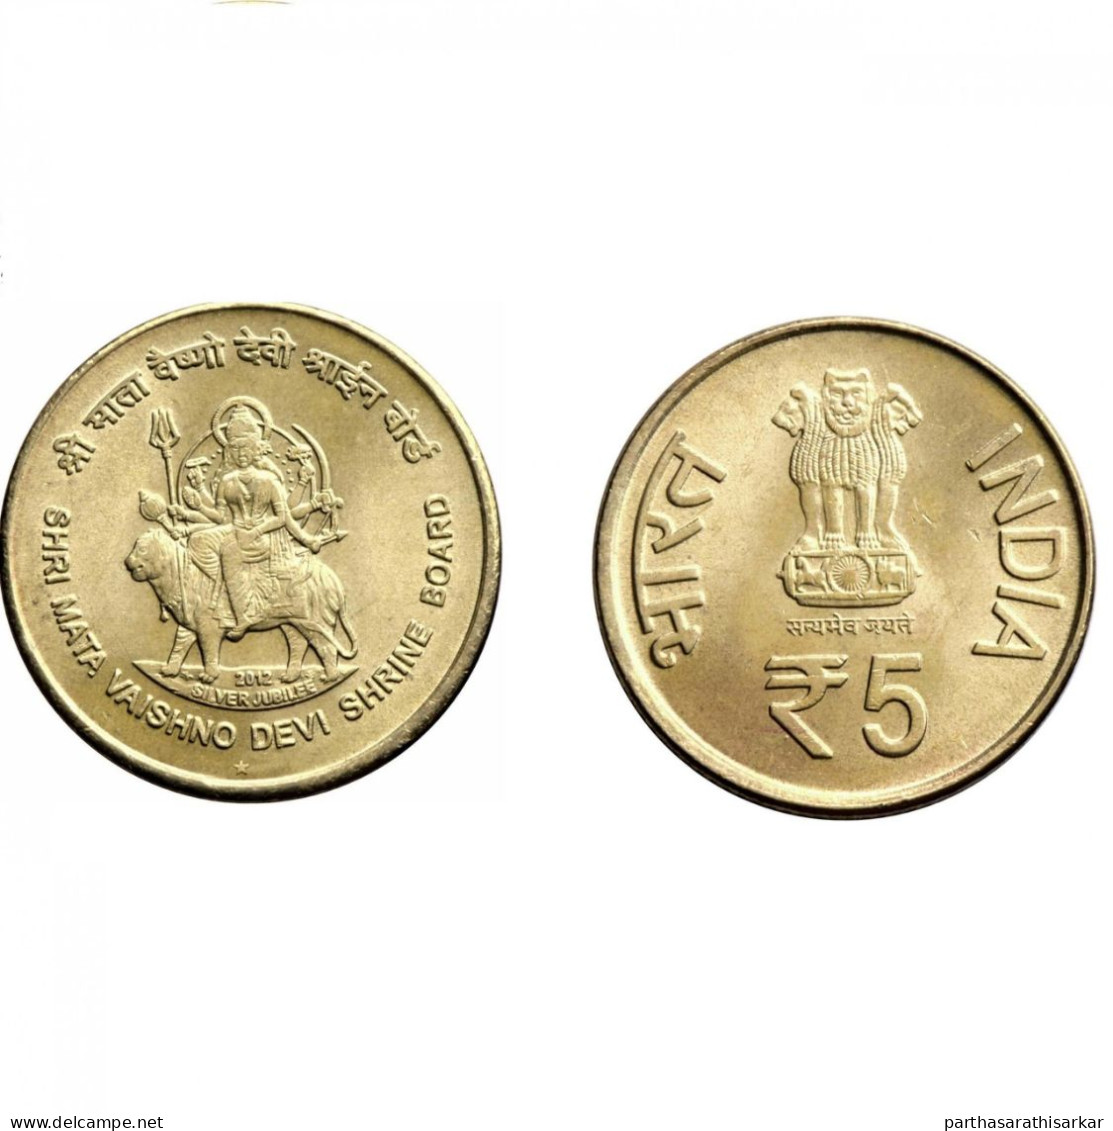 INDIA 2012 SHRI MATA VAISHNO DEVI 5 RUPEES UNC COIN RARE - Inde